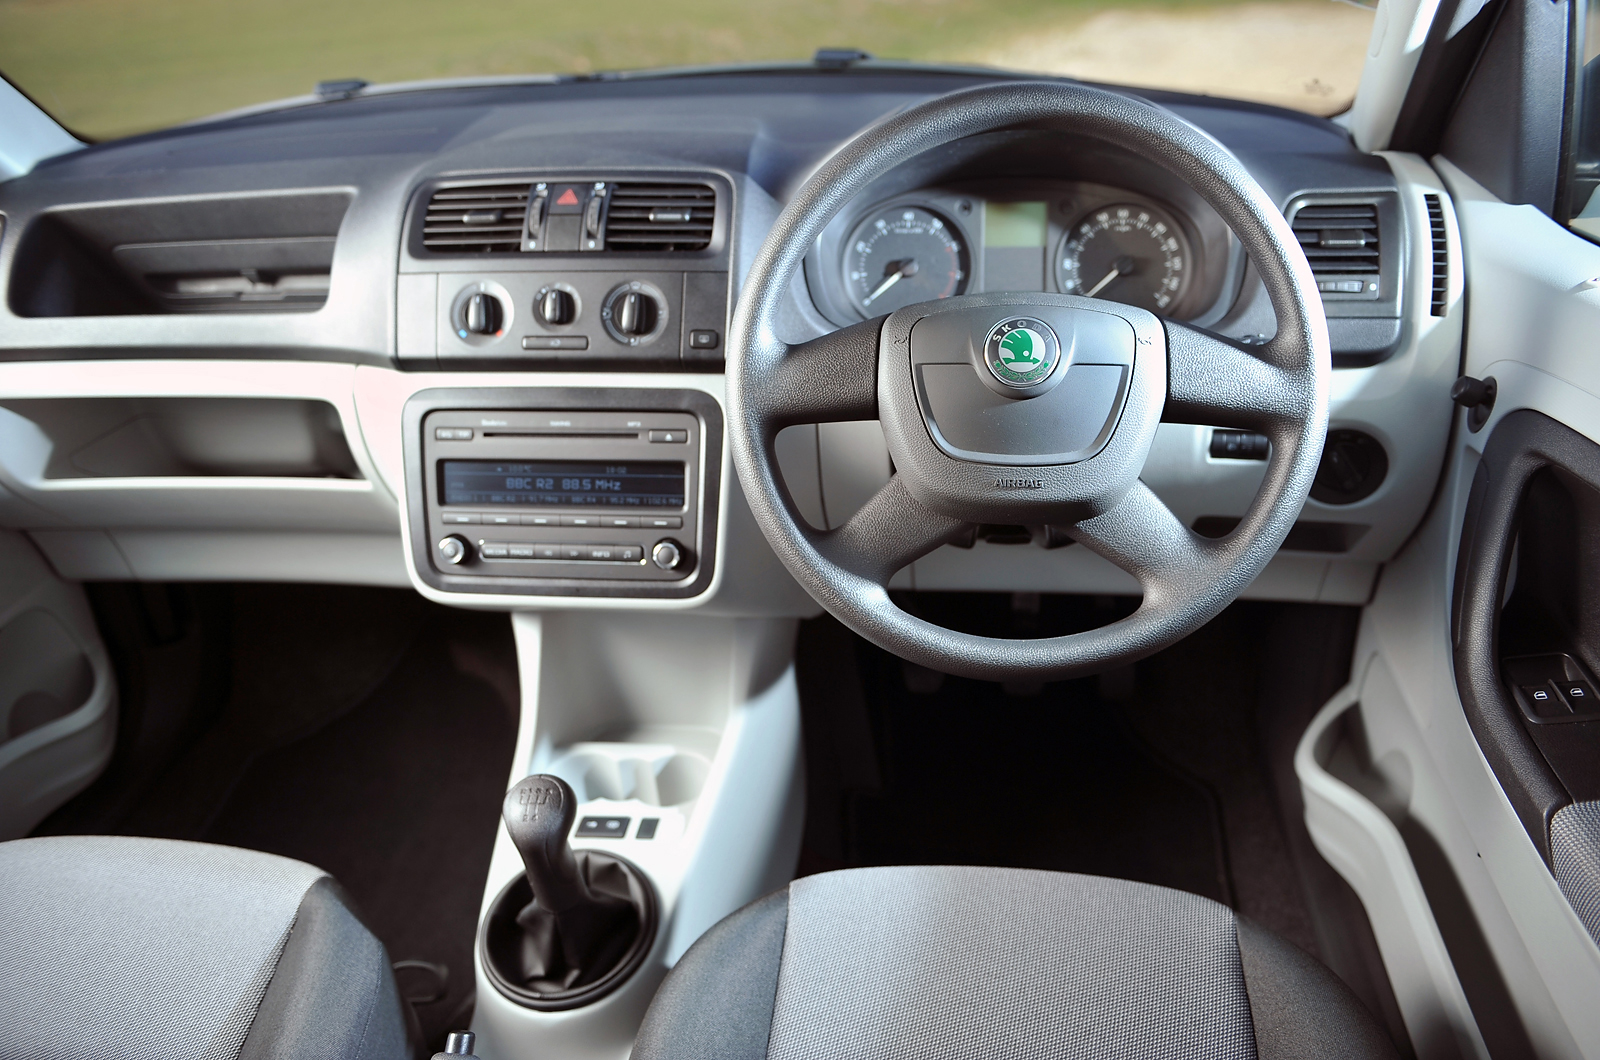 Used Skoda Roomster Hatchback (2006 - 2015) interior